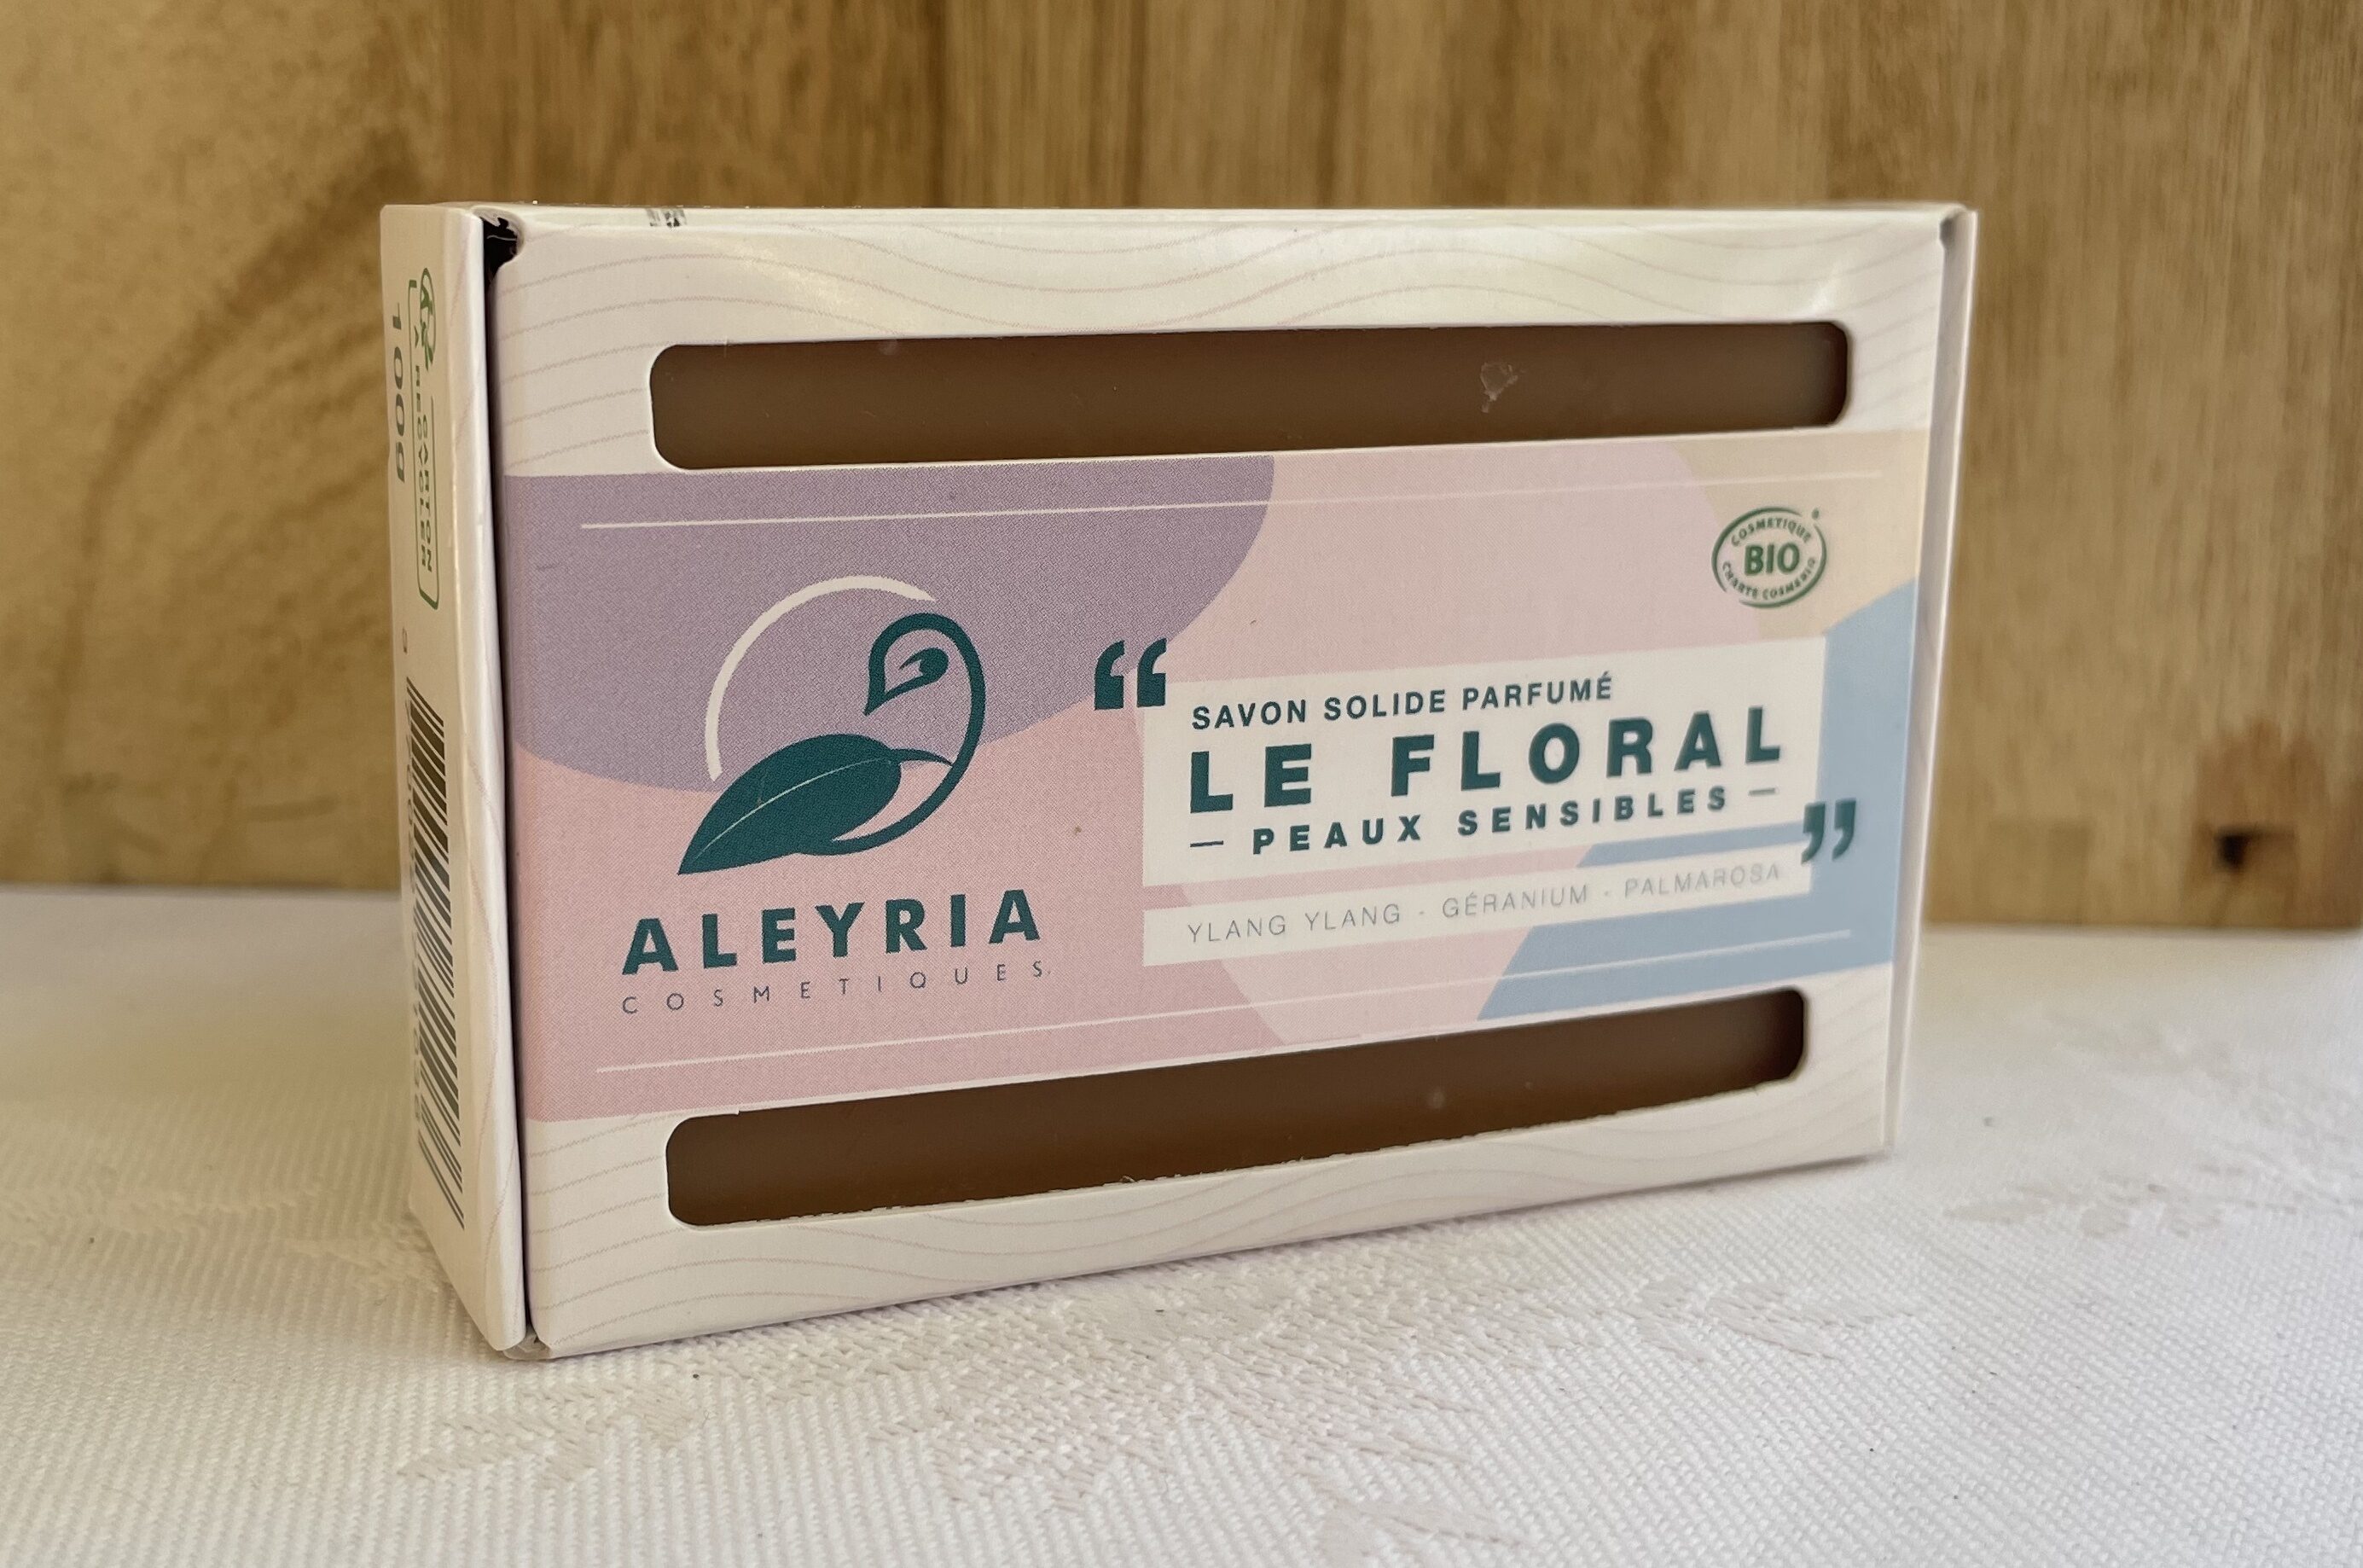 Savon solide Le floral peaux sensibles - Aleyria Cosmétiques - Tuote - fr